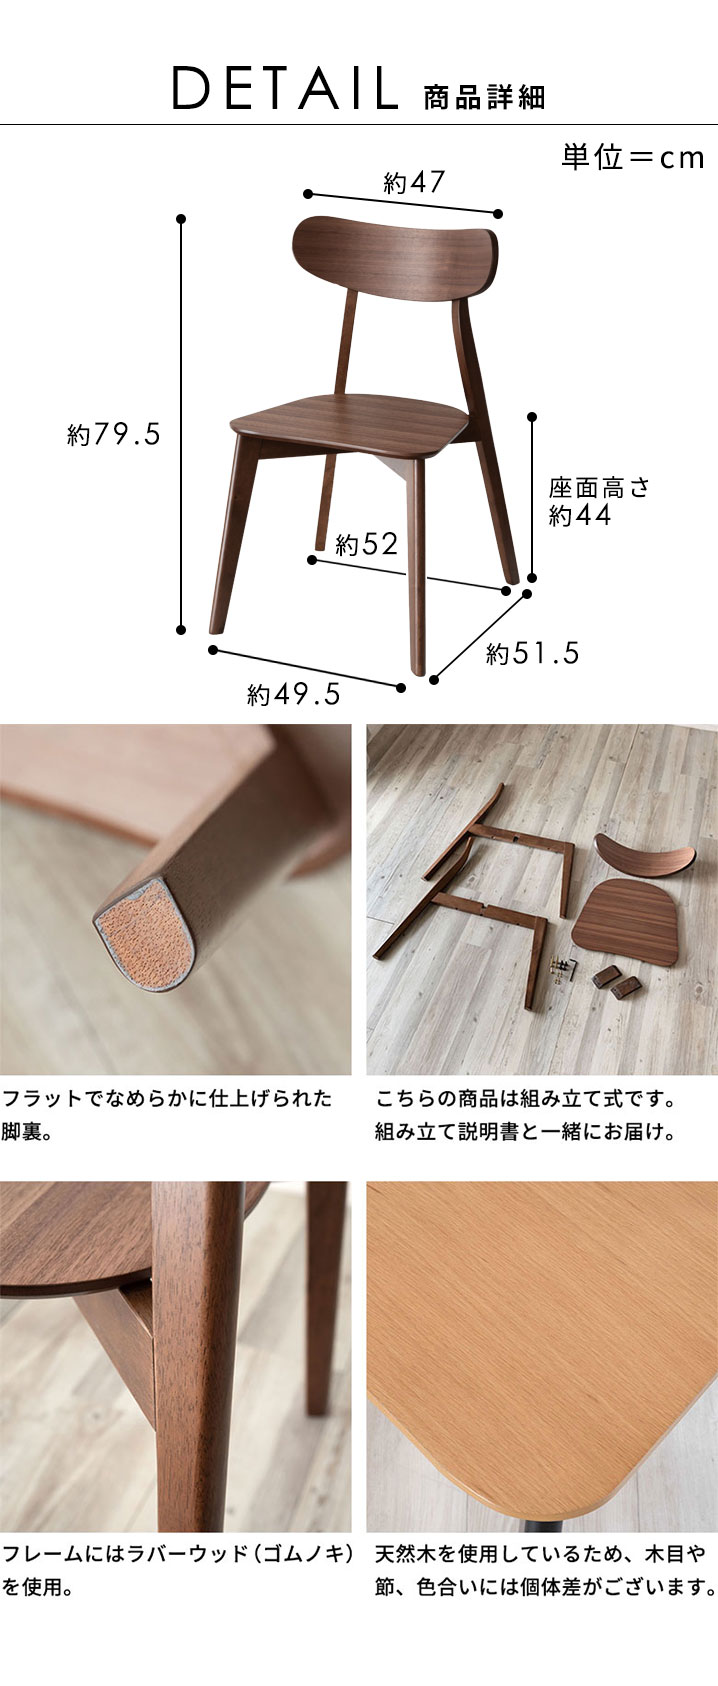 檜の椅子(36)、インテリア台 座面はつるつるに仕上げ、側面は薄皮 